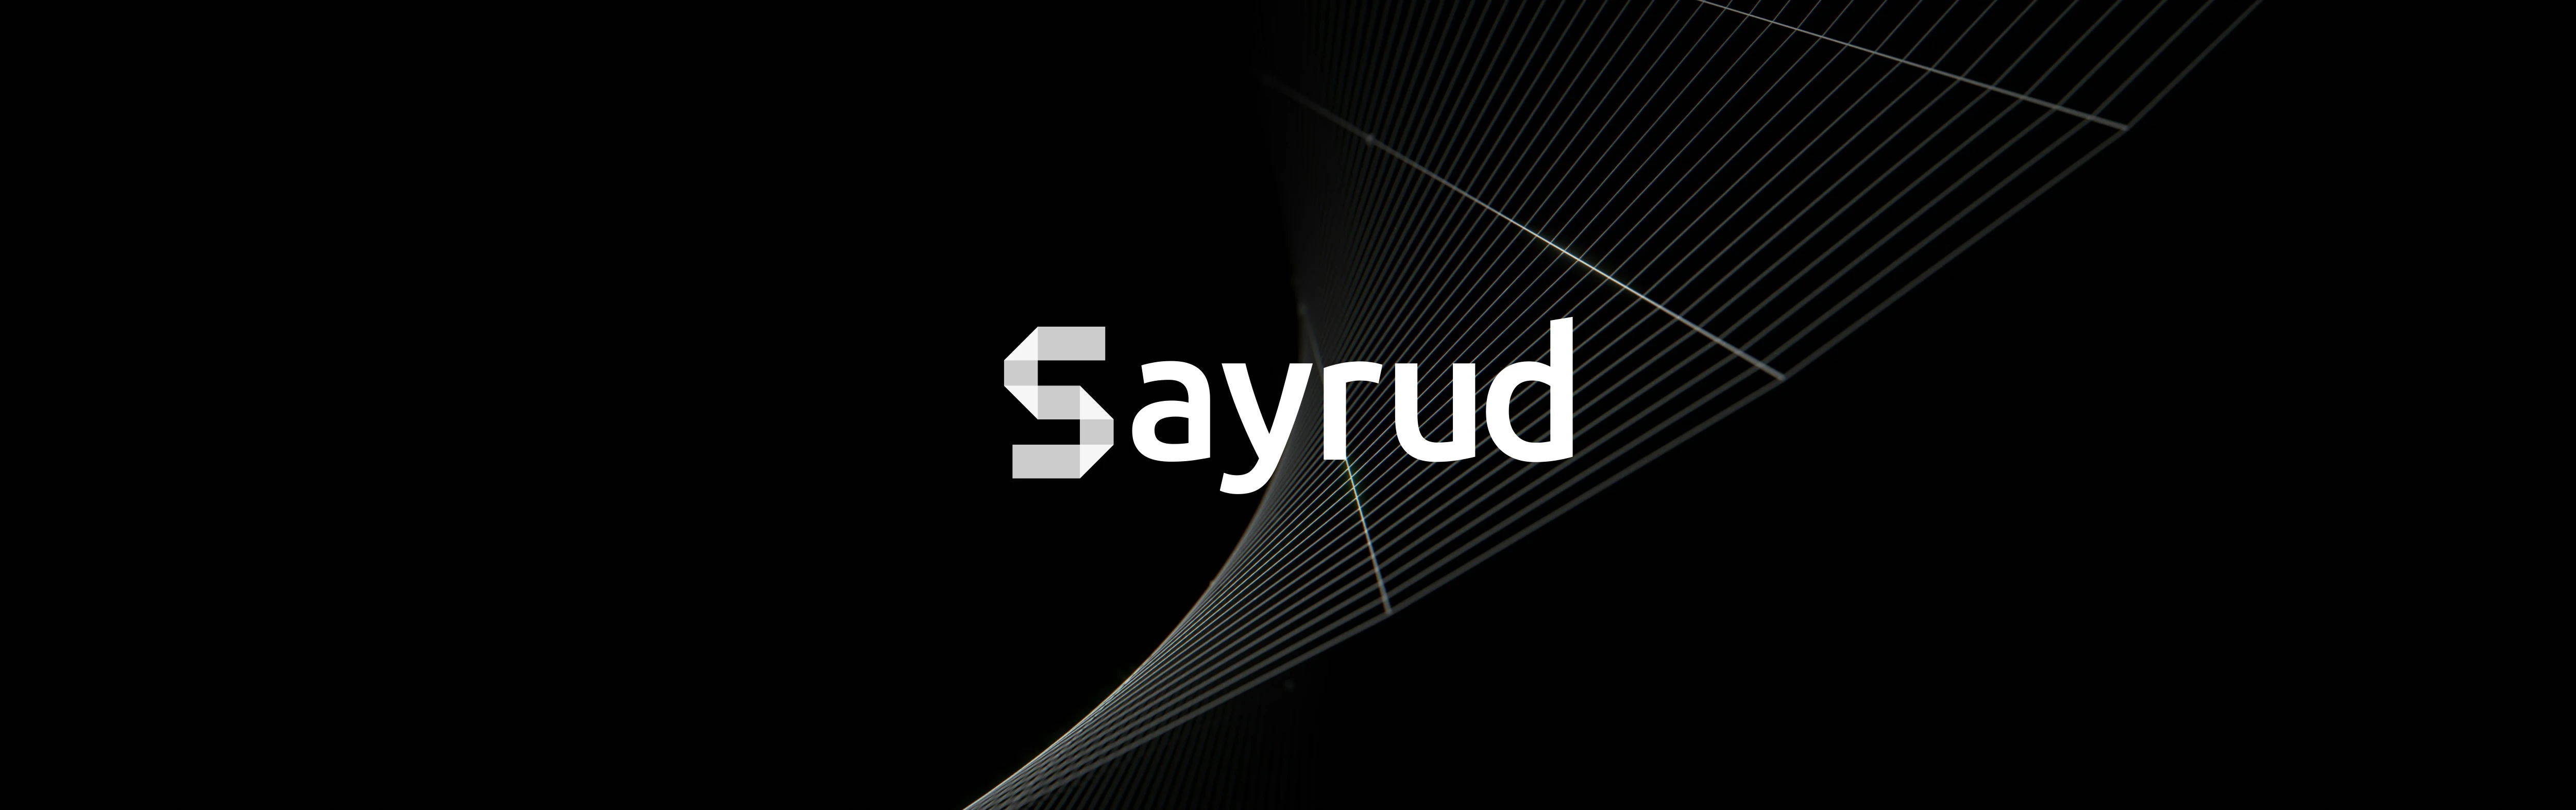 Sayrud：因为不想重复写 CRUD，我把 18 岁那年开的坑填完了